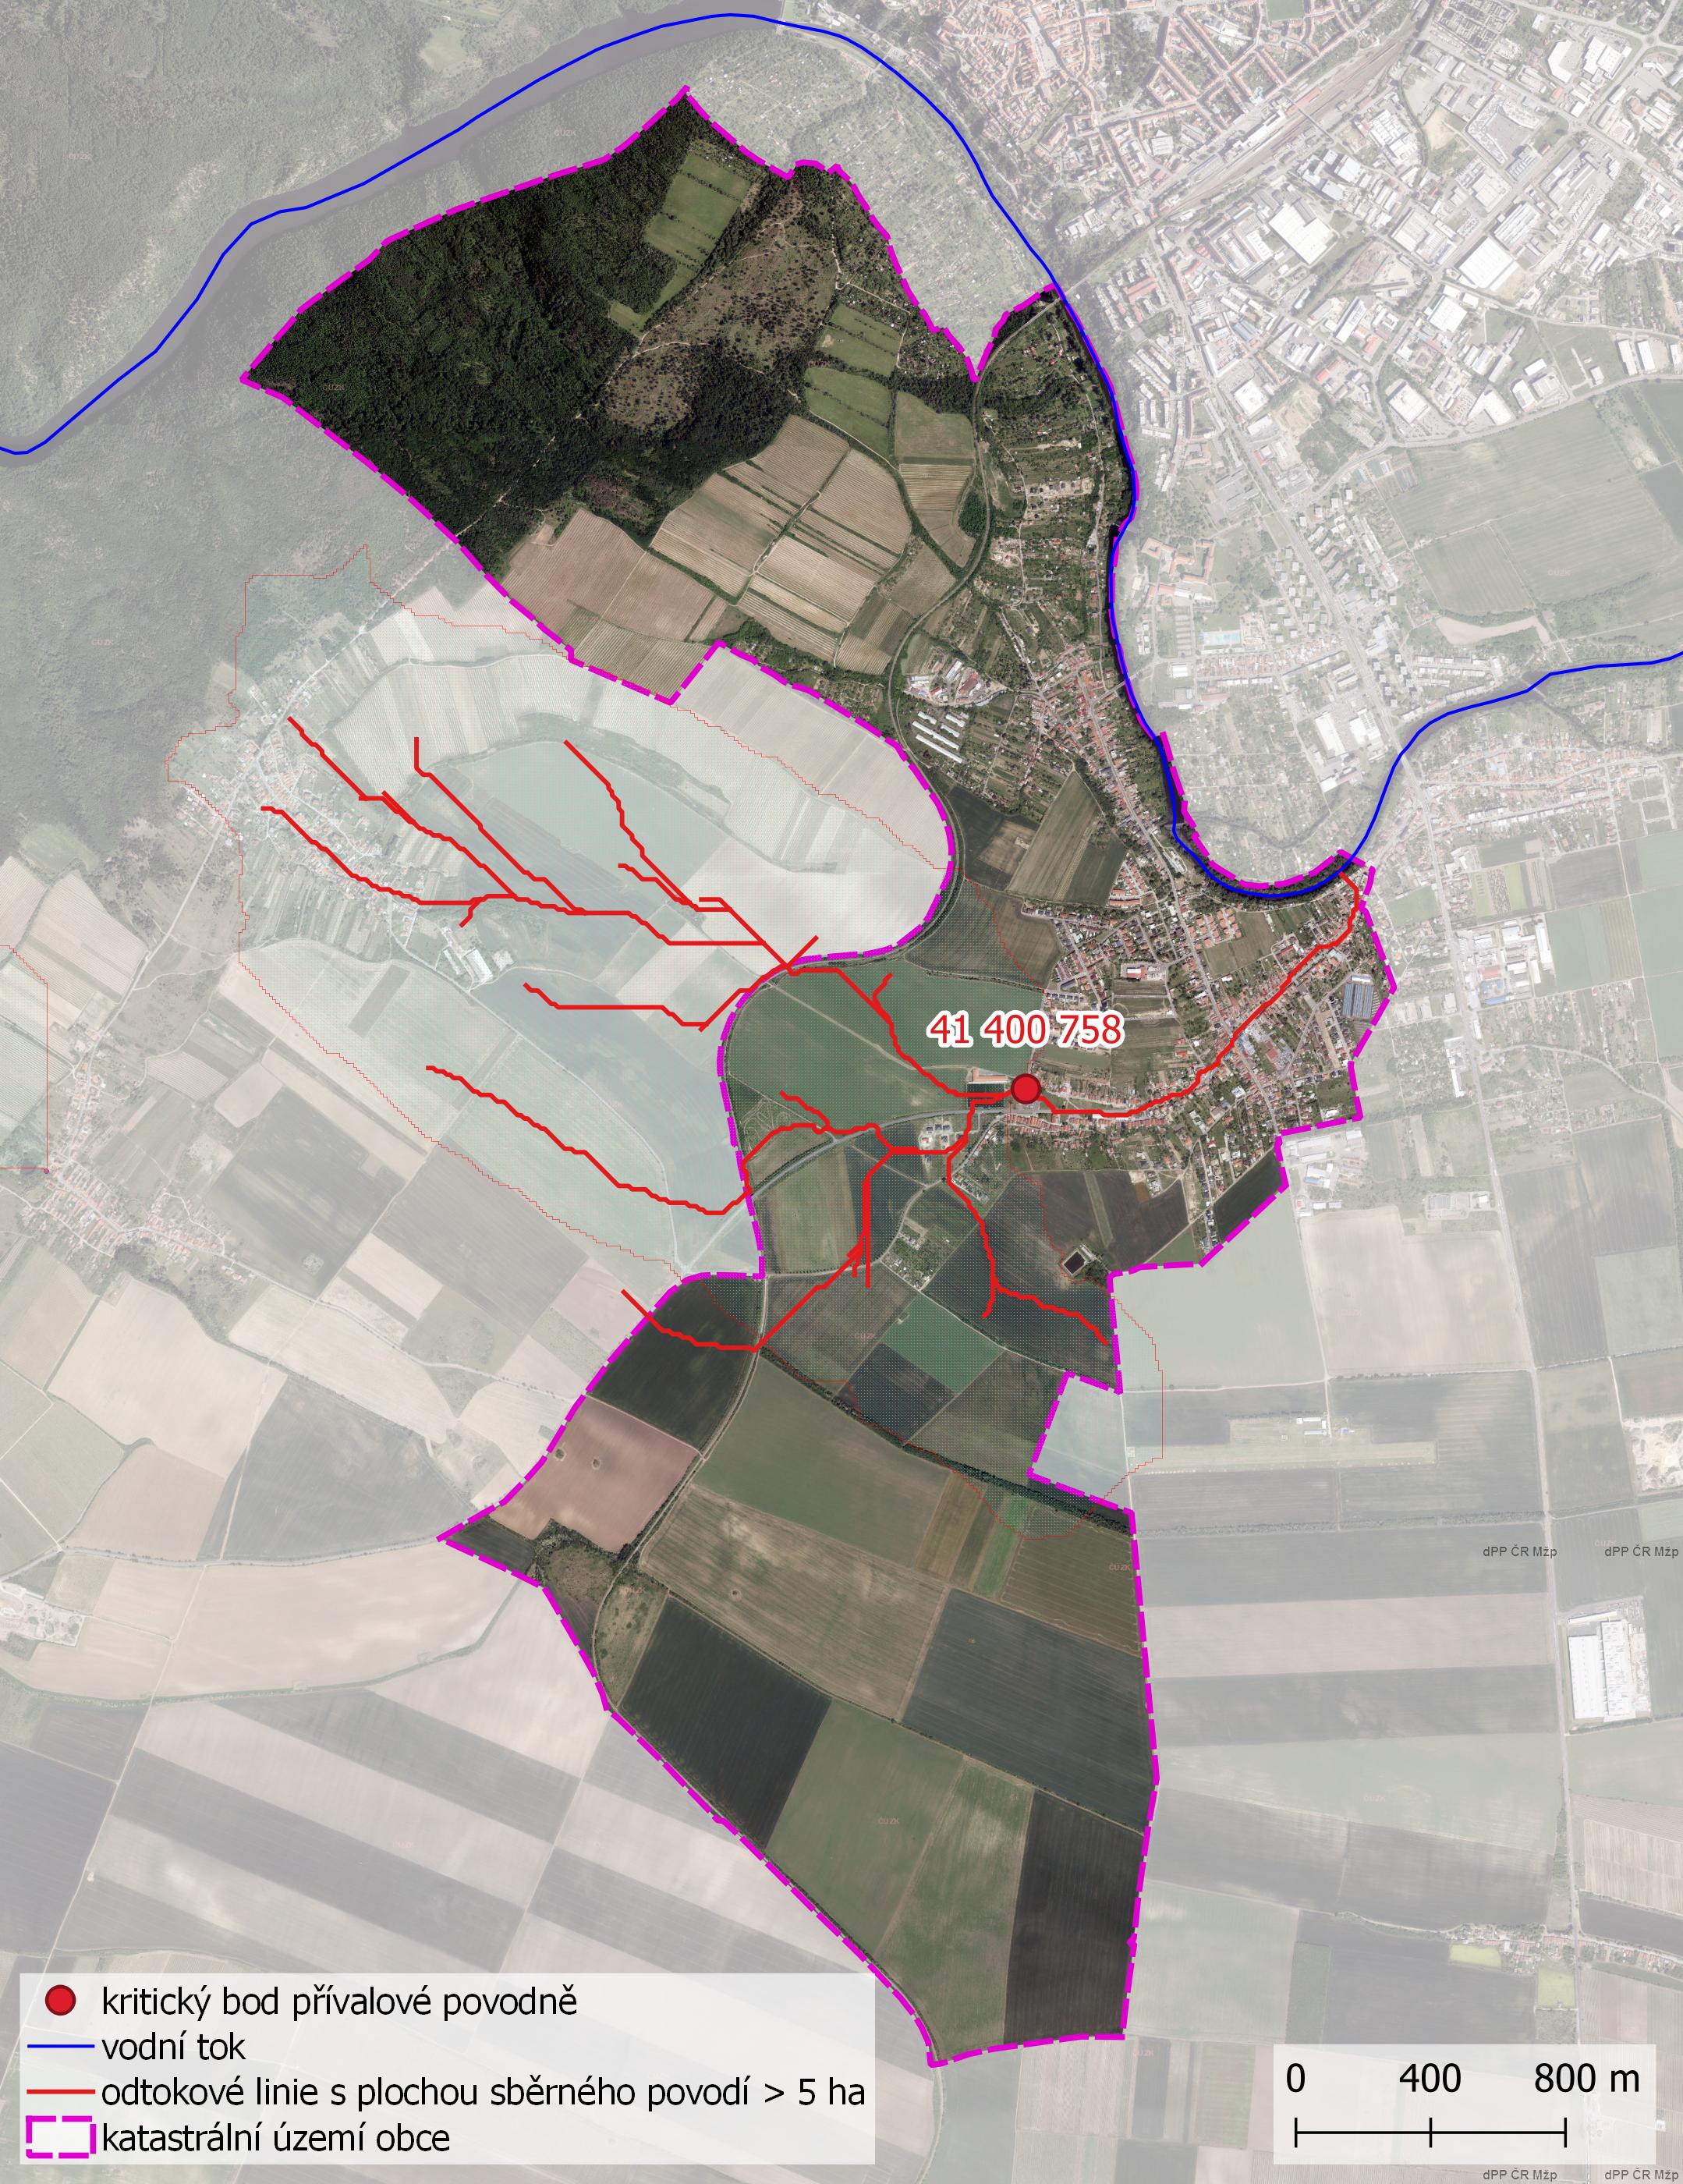 Zhodnocení vzniku přívalových povodní na území obce Nový Šaldorf-Sedlešovice metodou kritických bodů